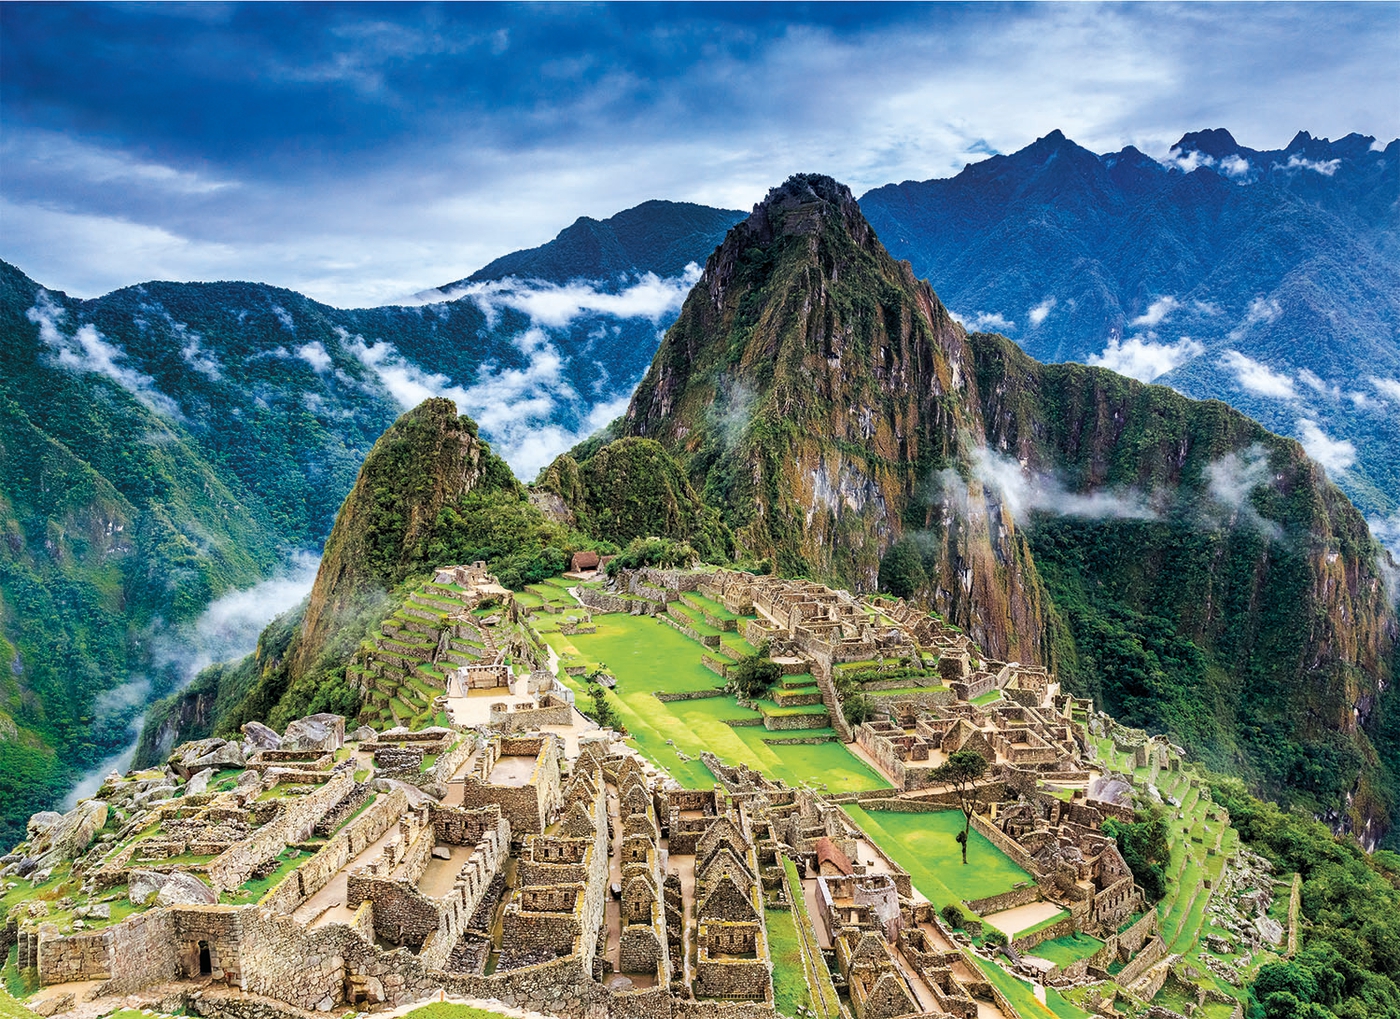 Clementoni CLEMENTONI Machu Picchu 1000 pieces adults puzzle 